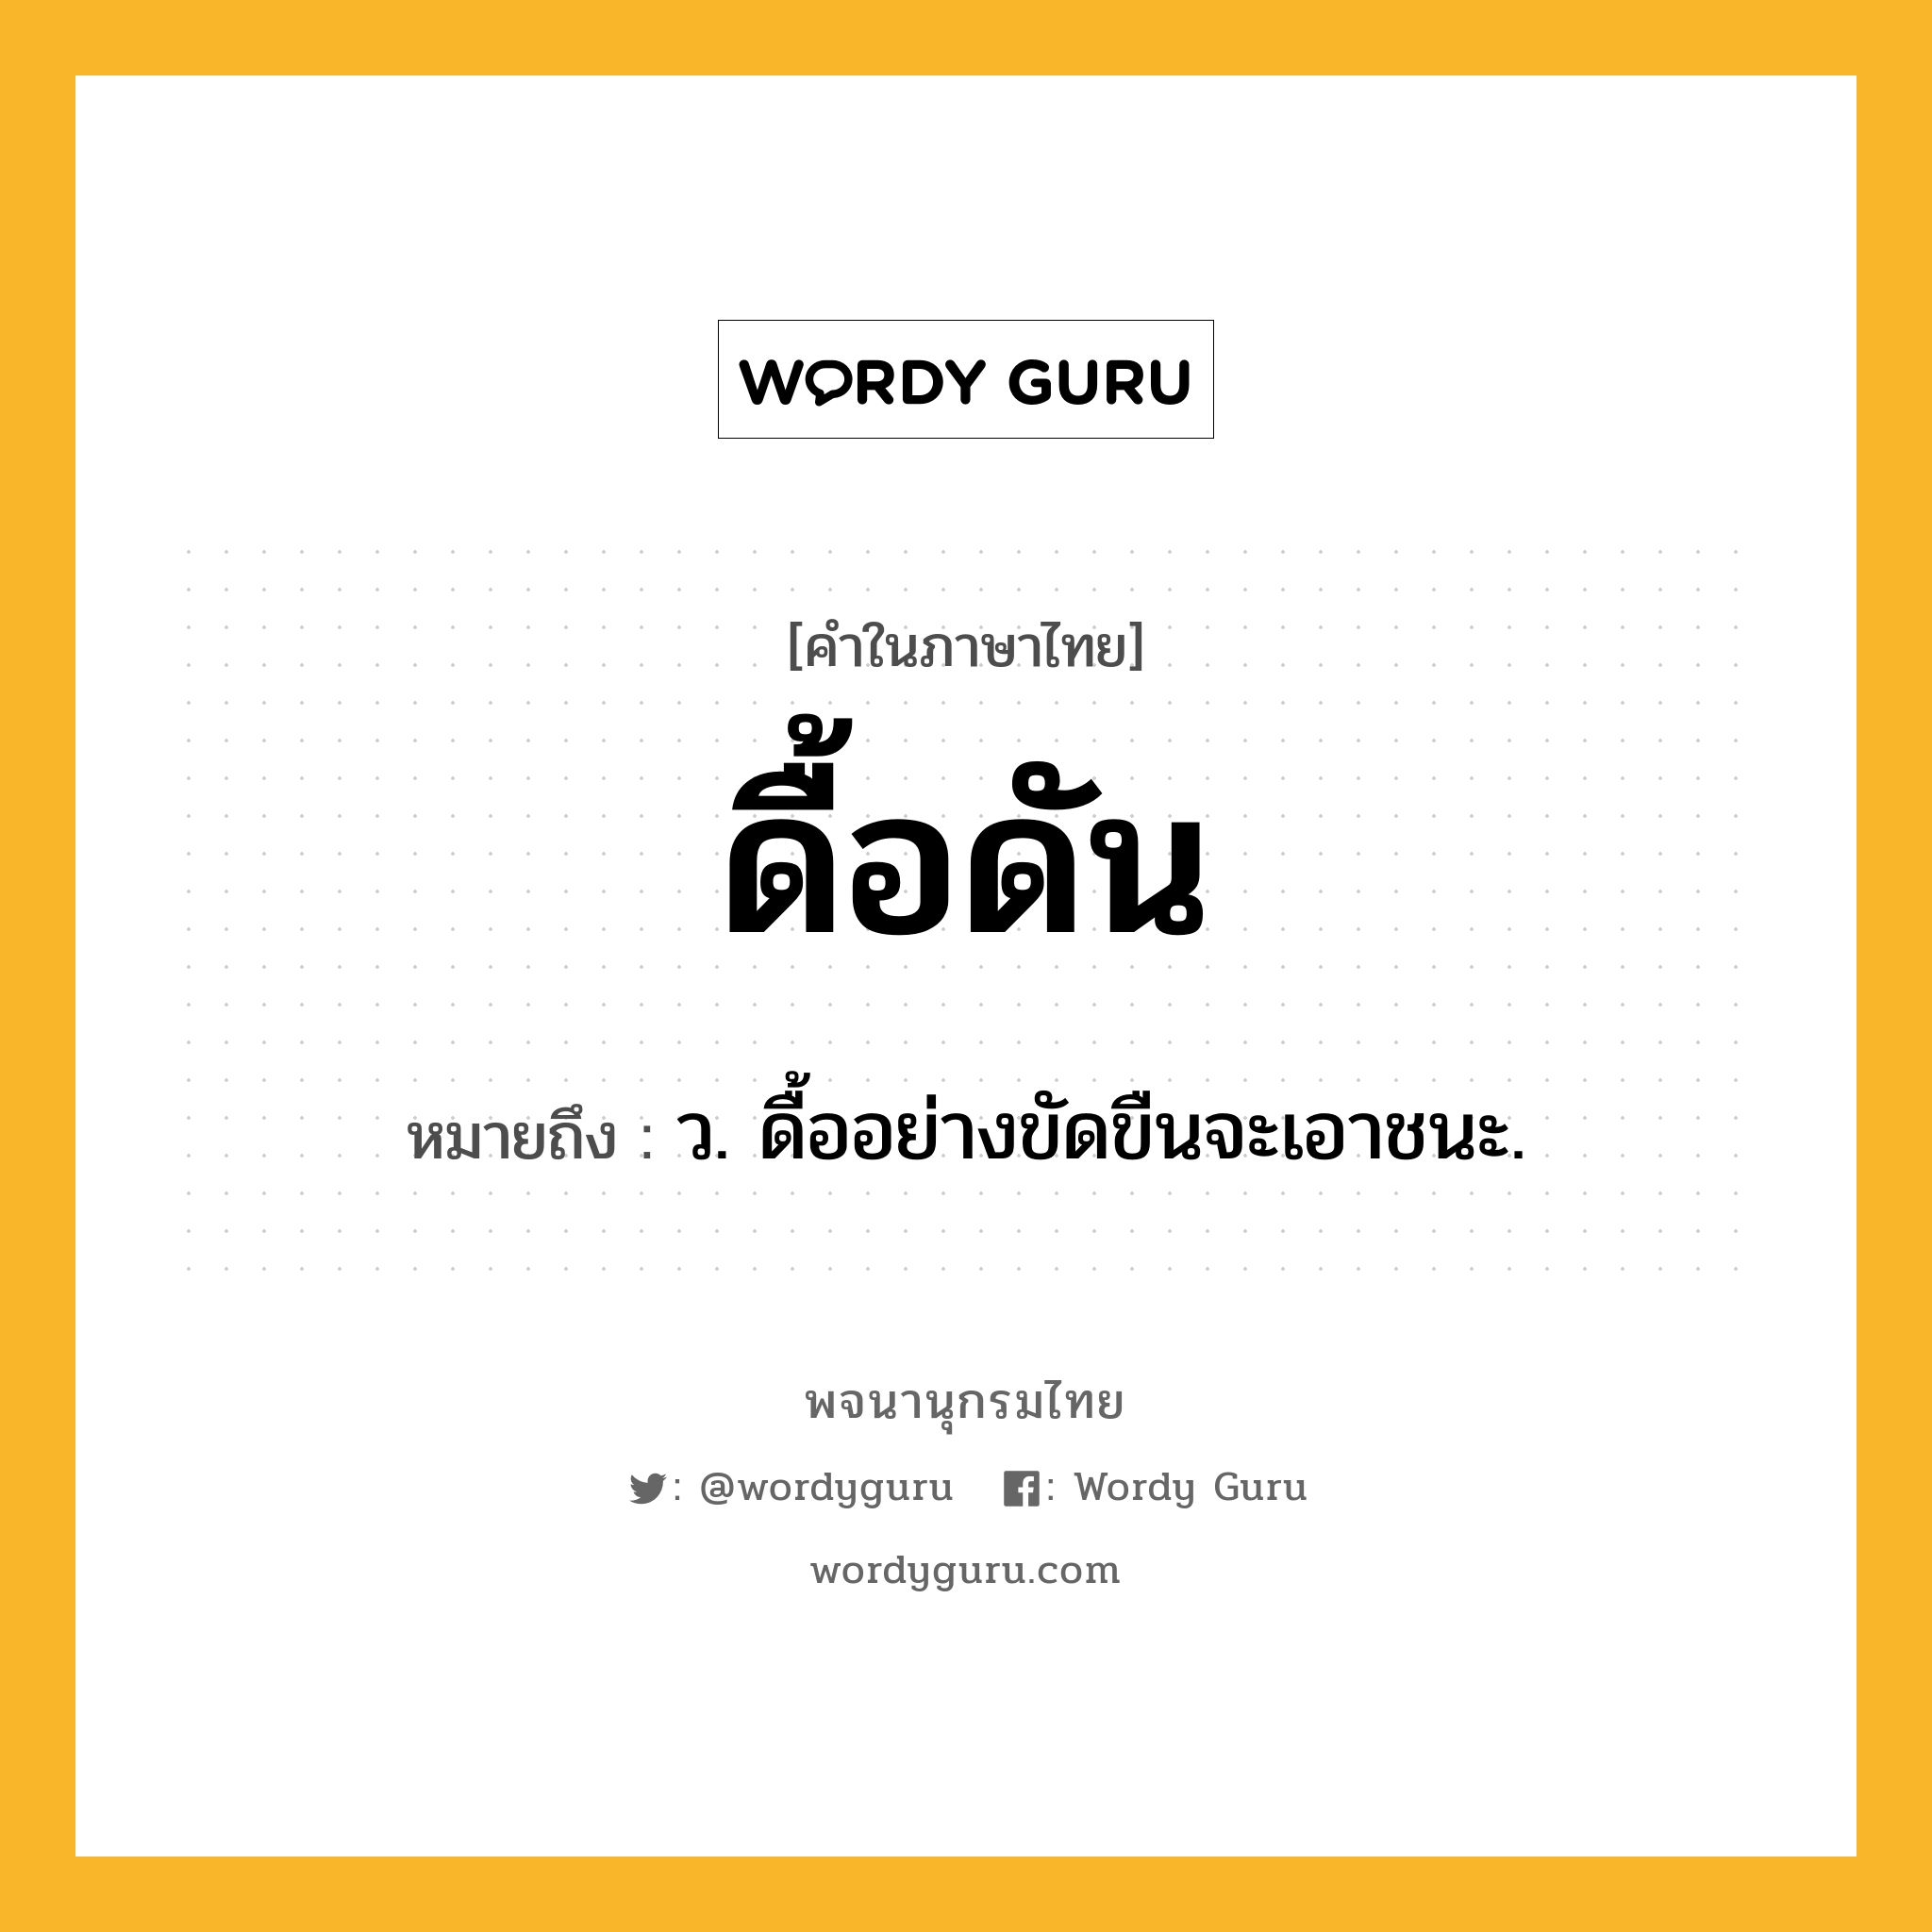 ดื้อดัน ความหมาย หมายถึงอะไร?, คำในภาษาไทย ดื้อดัน หมายถึง ว. ดื้ออย่างขัดขืนจะเอาชนะ.